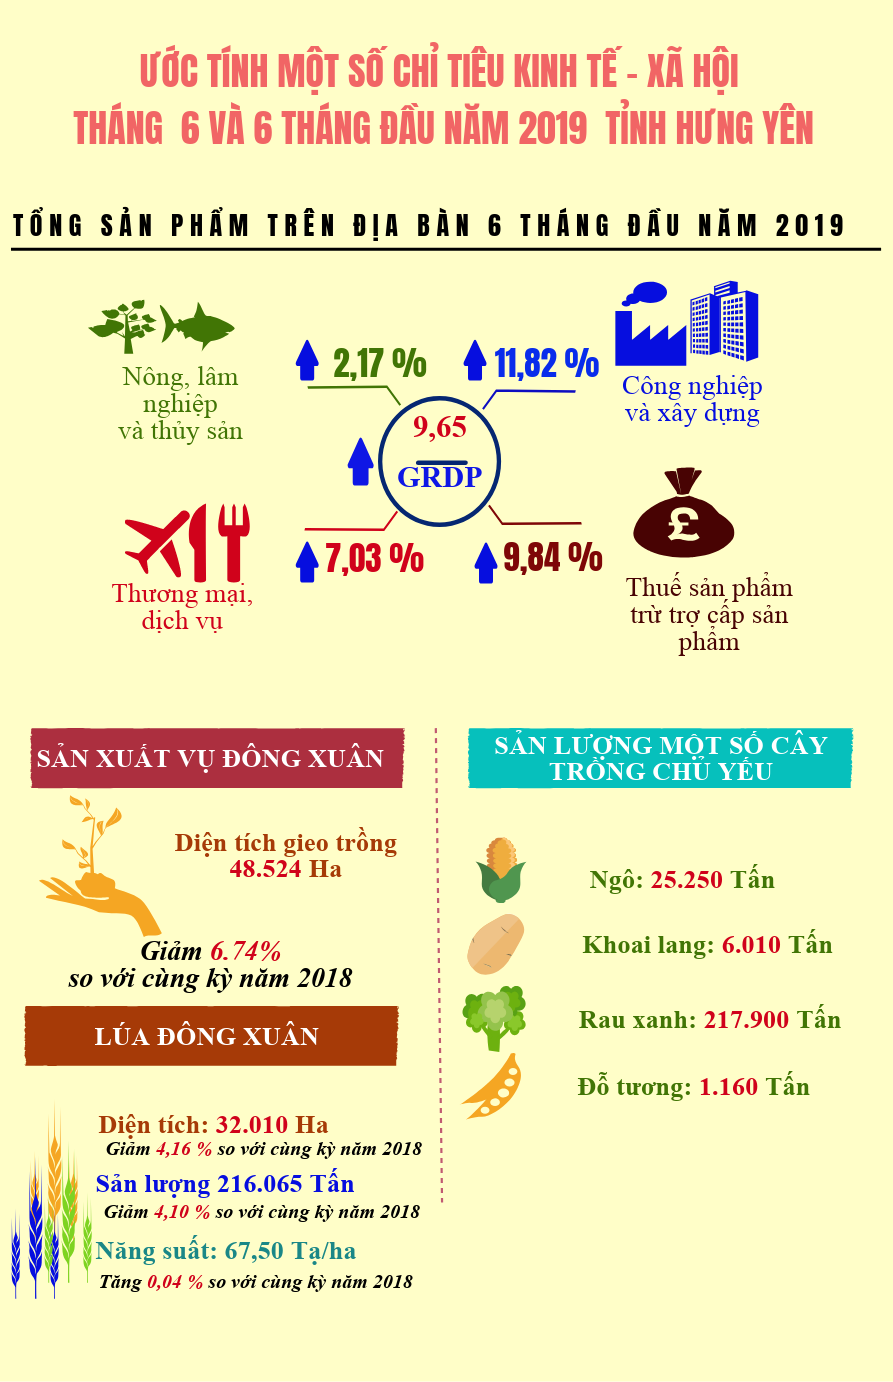 Info tình hình kinh tế - xã hội tỉnh Hưng Yên 6 tháng năm 2019